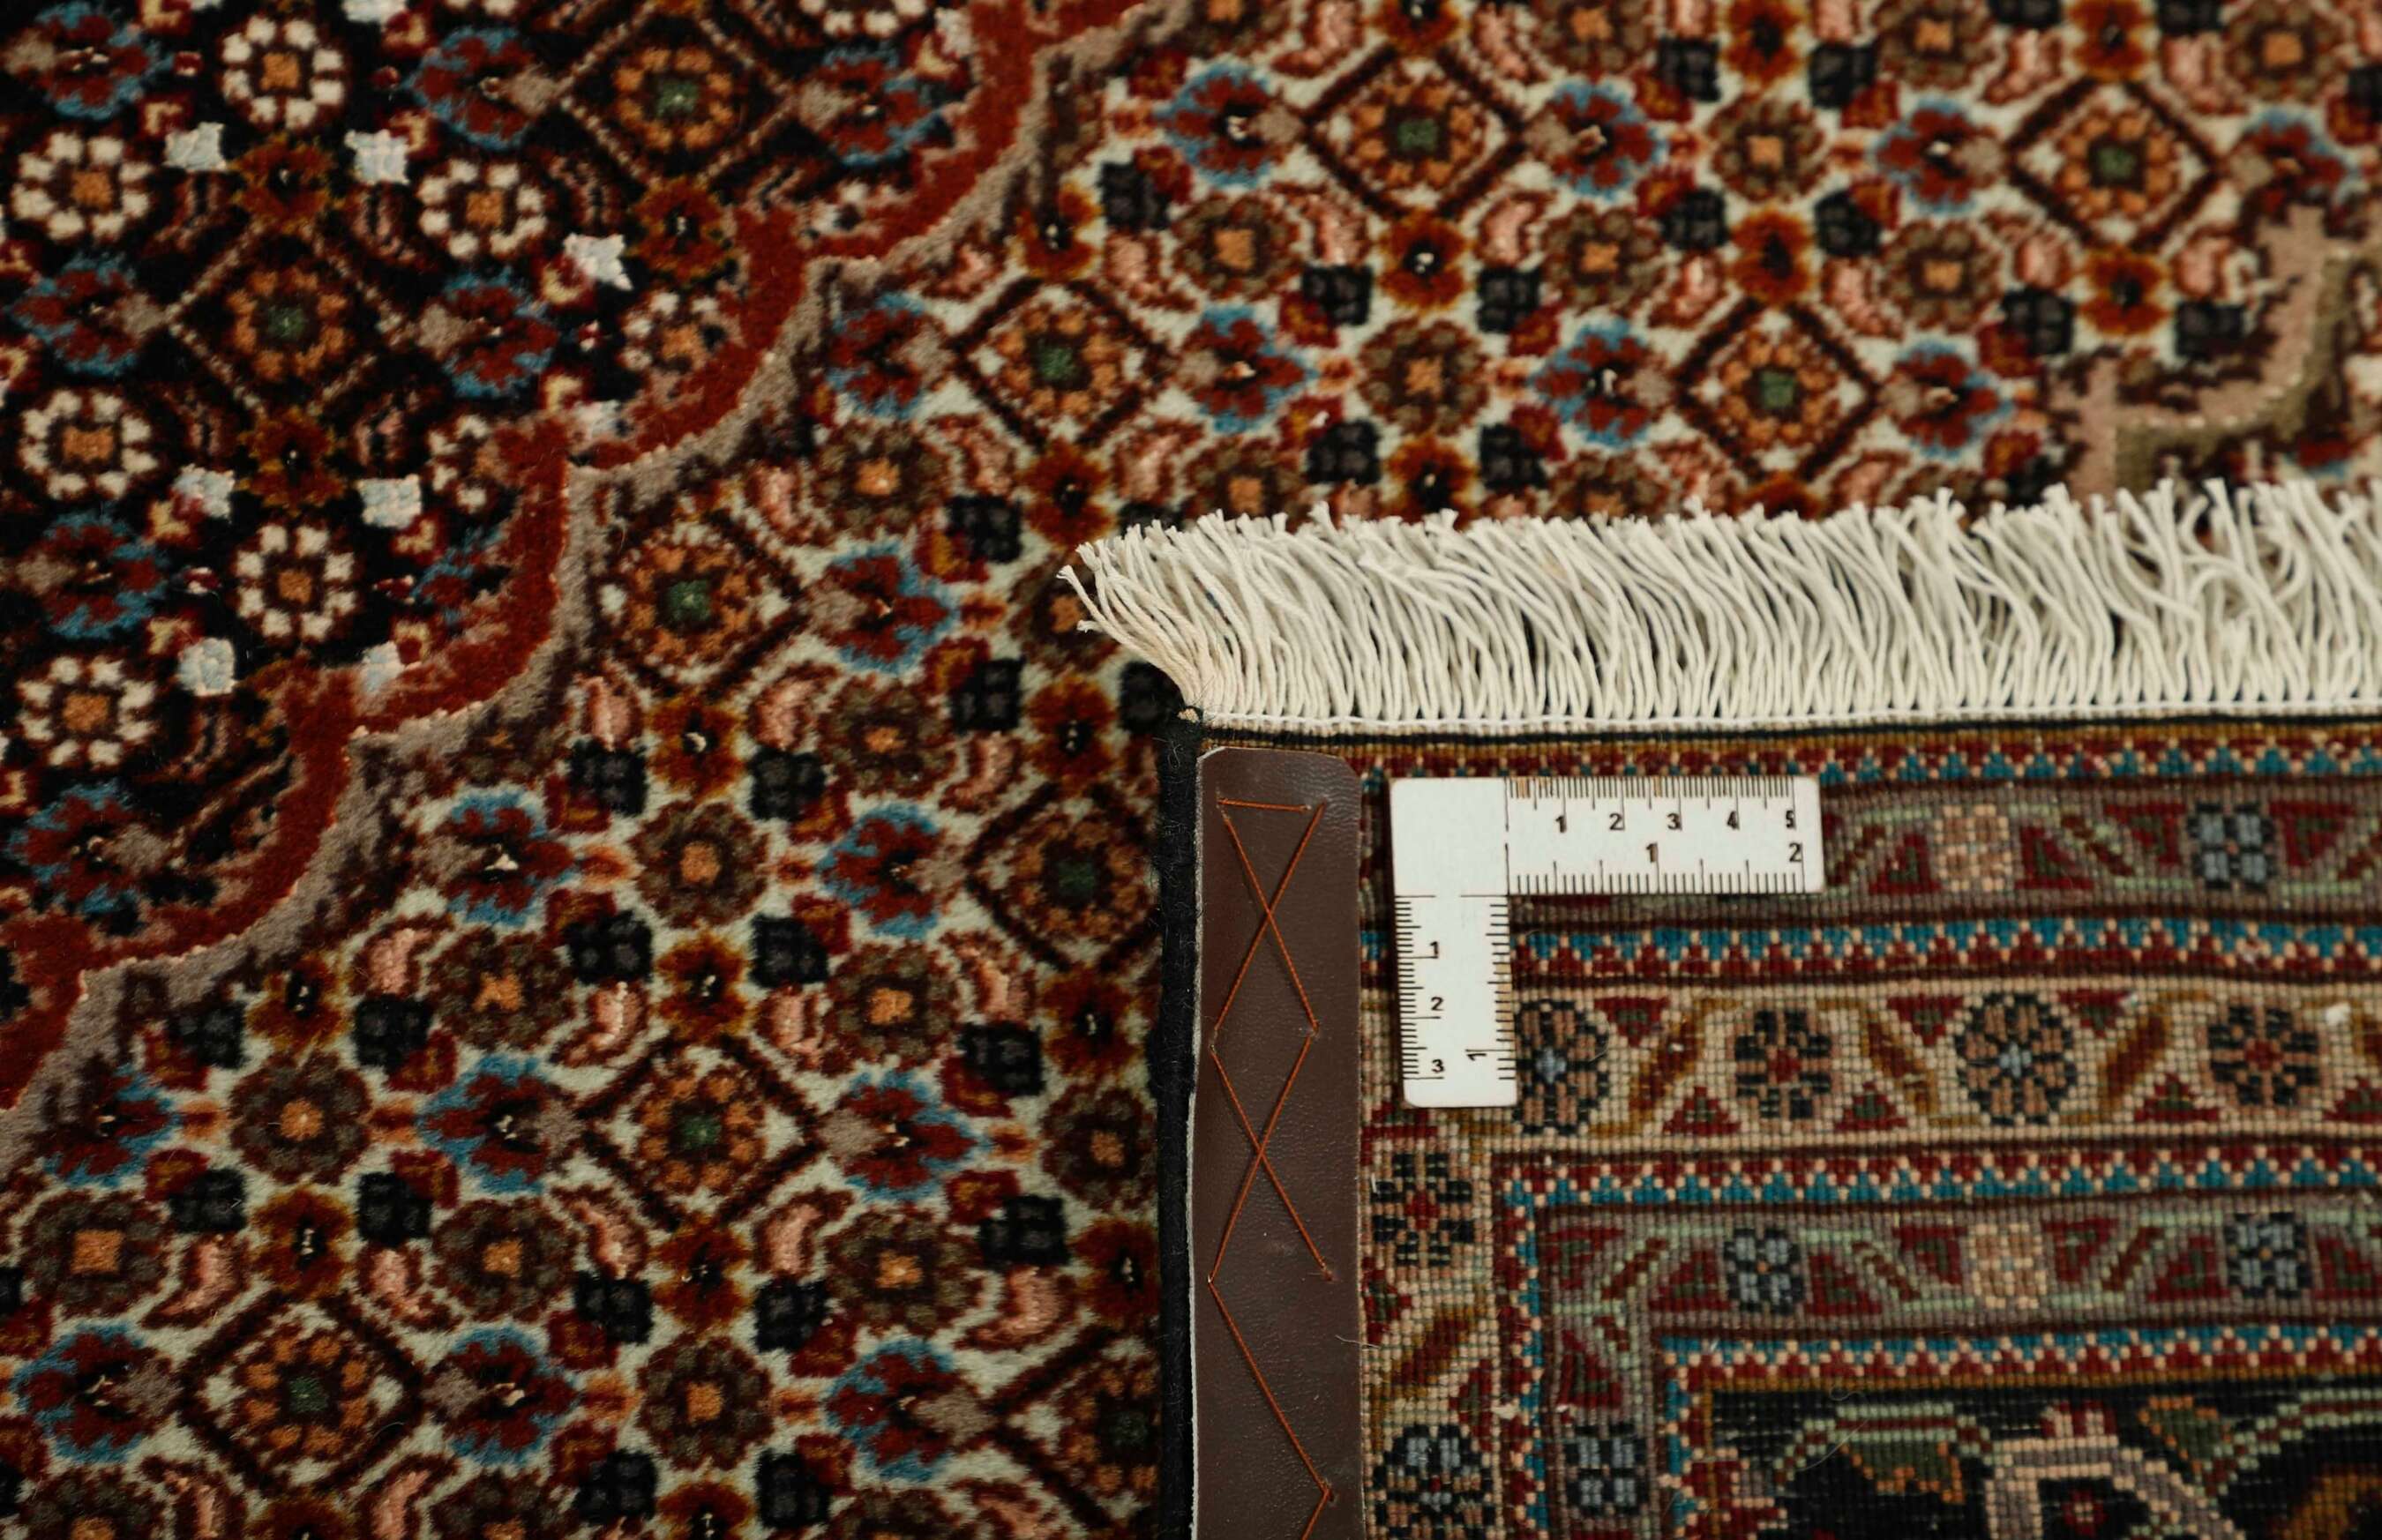 
    Tabriz 40 Mahi - Brown - 247 x 338 cm
  